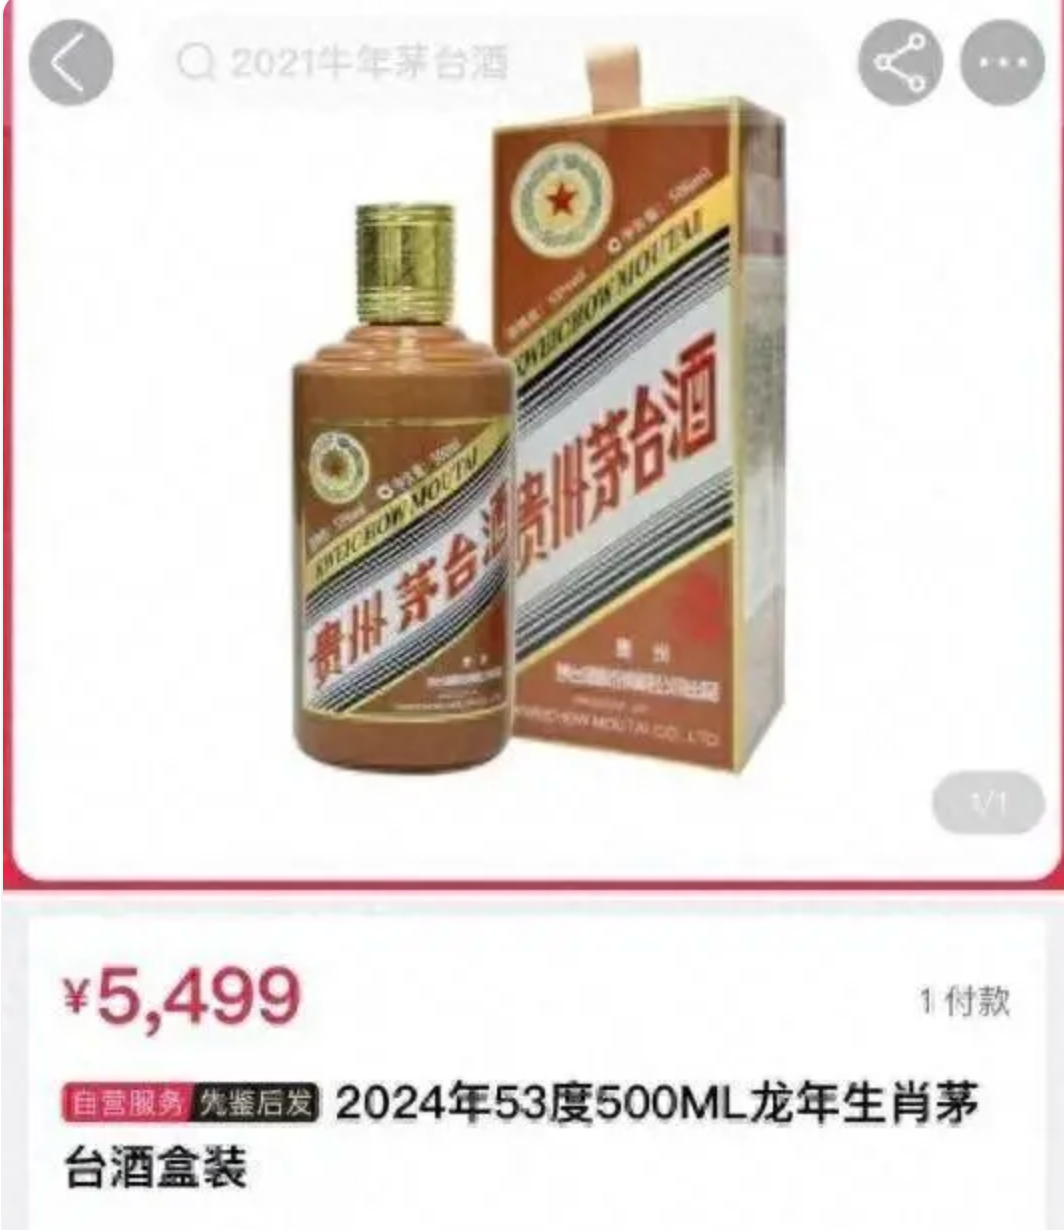 龙茅”爆火！超850万人申购，2499元/瓶！已有平台加价超5000元